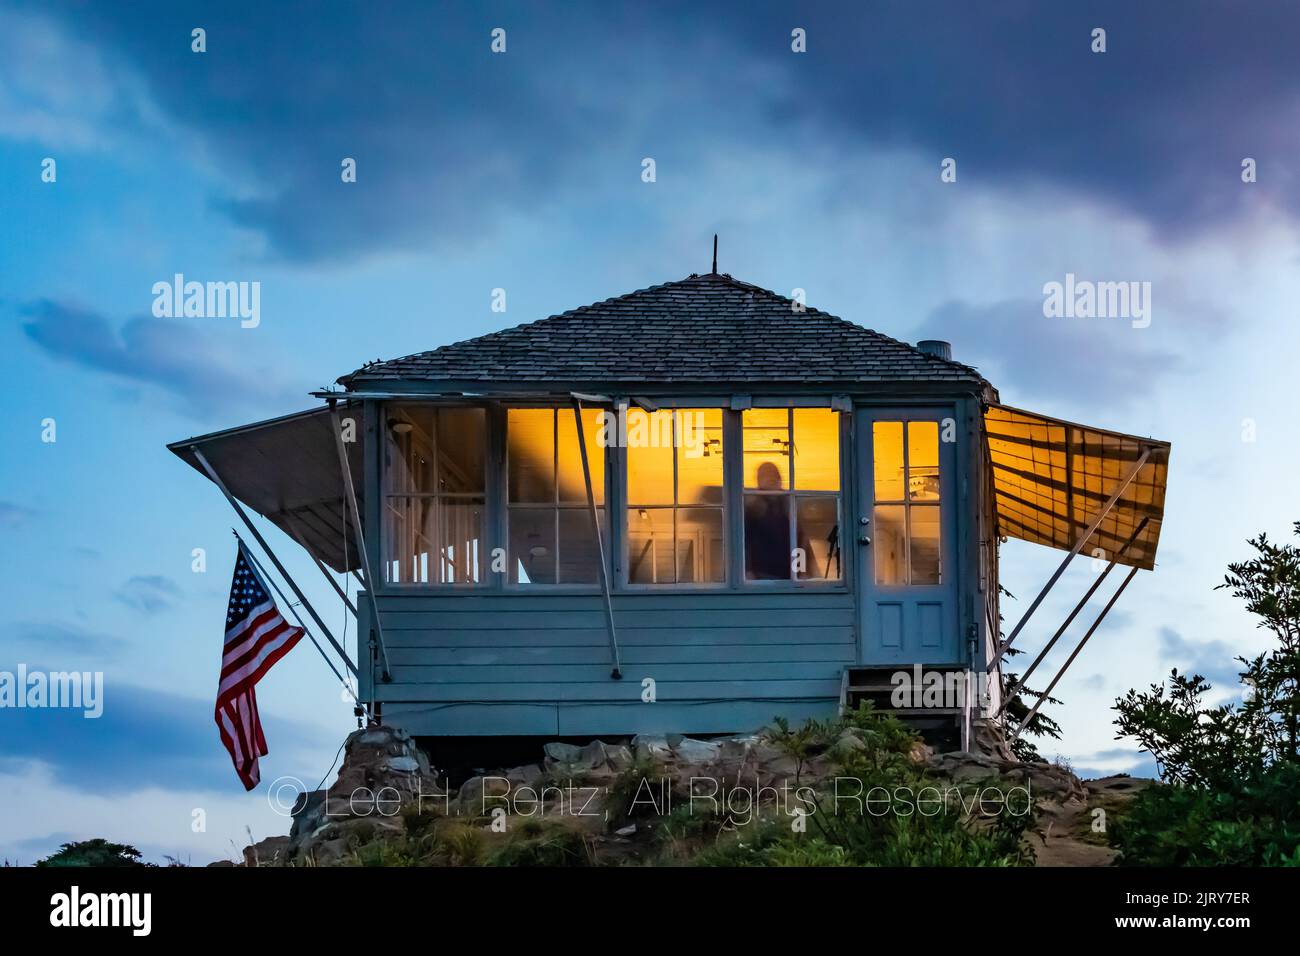 Crepúsculo en Evergreen Mountain Lookout, con visitantes que alquilan el mirador iluminándolo dentro, Mt. Bosque Nacional Baker-Snoqualmie, Washington Stat Foto de stock